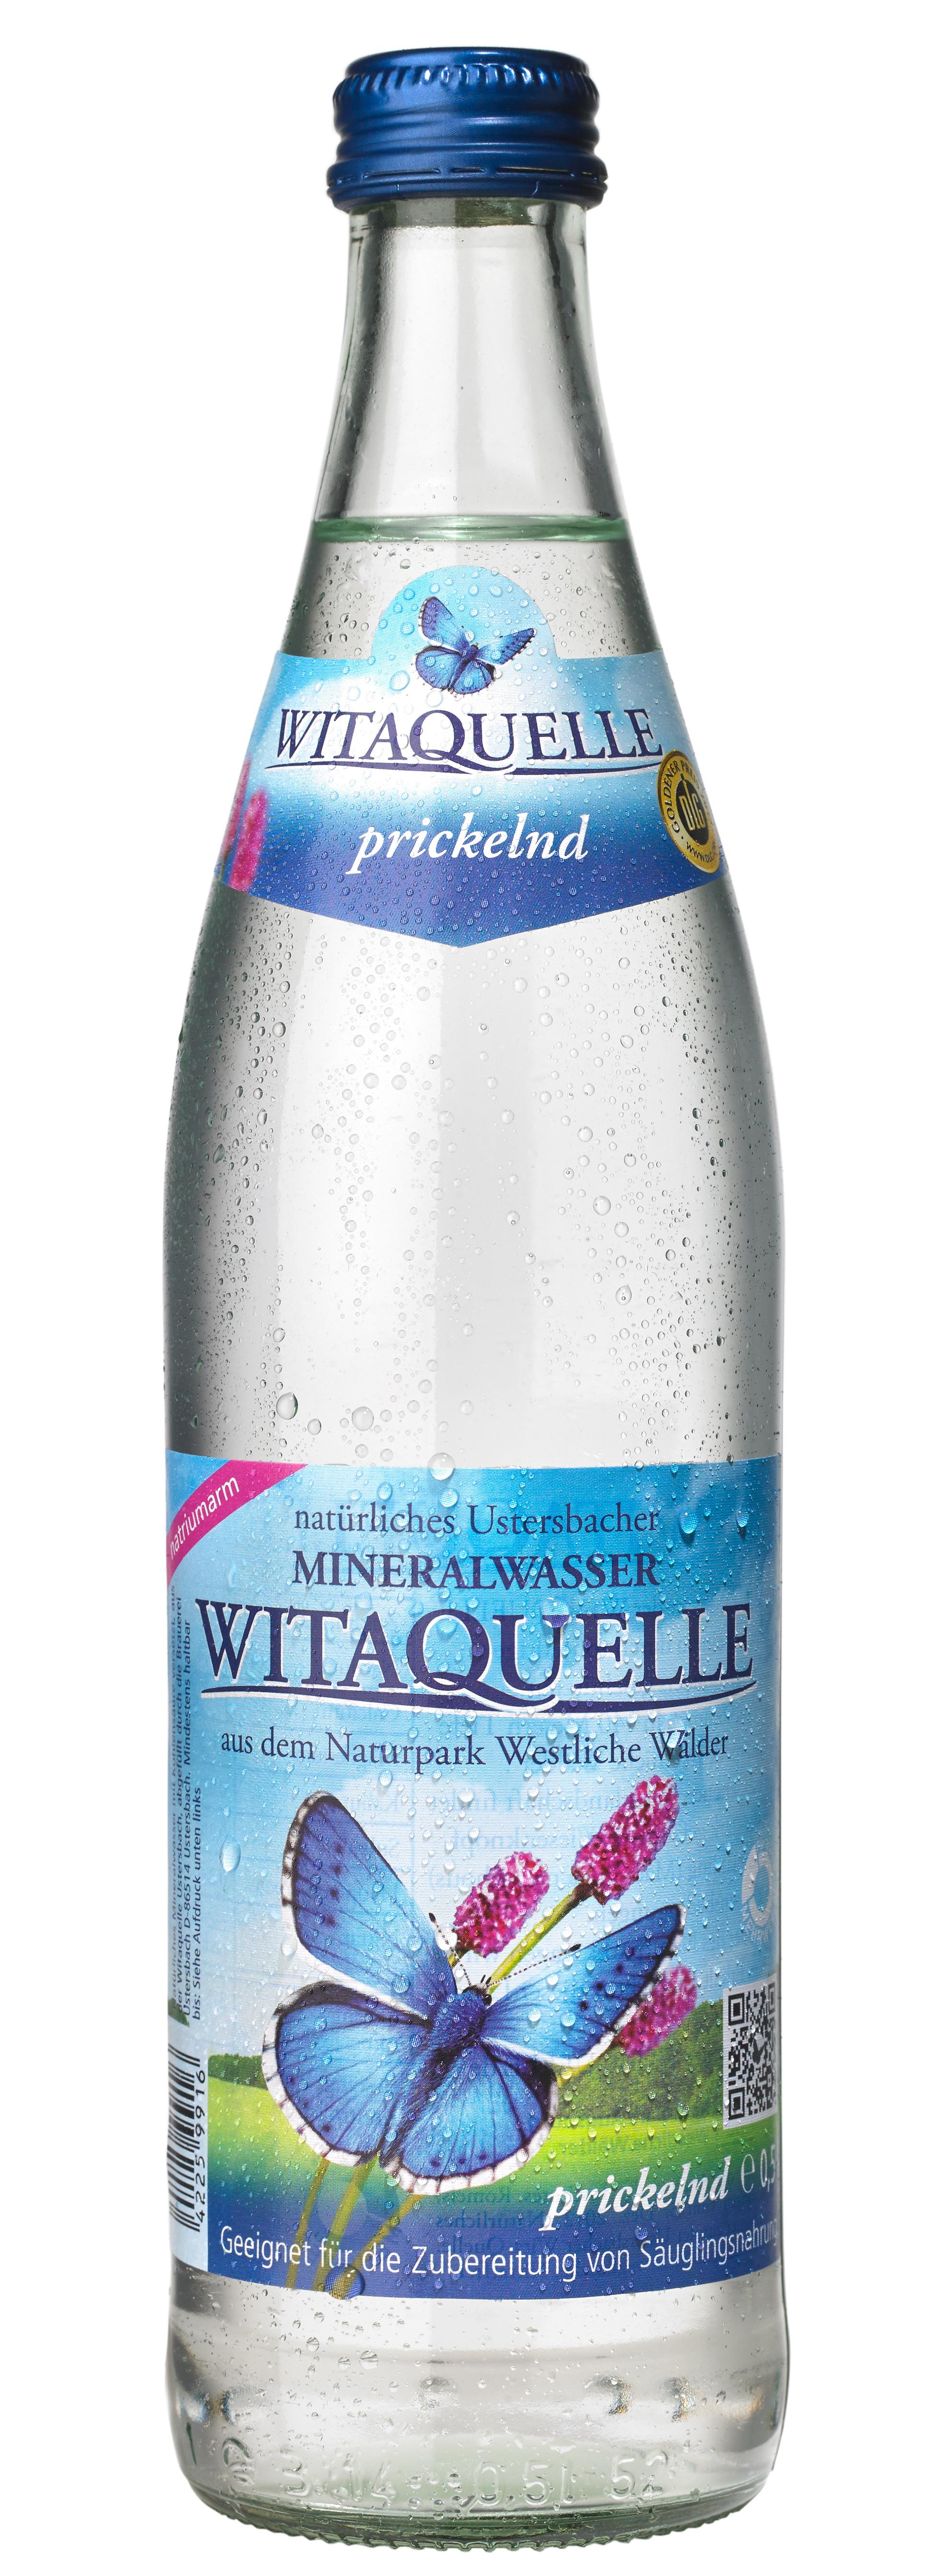 Witaquelle Prickelnd